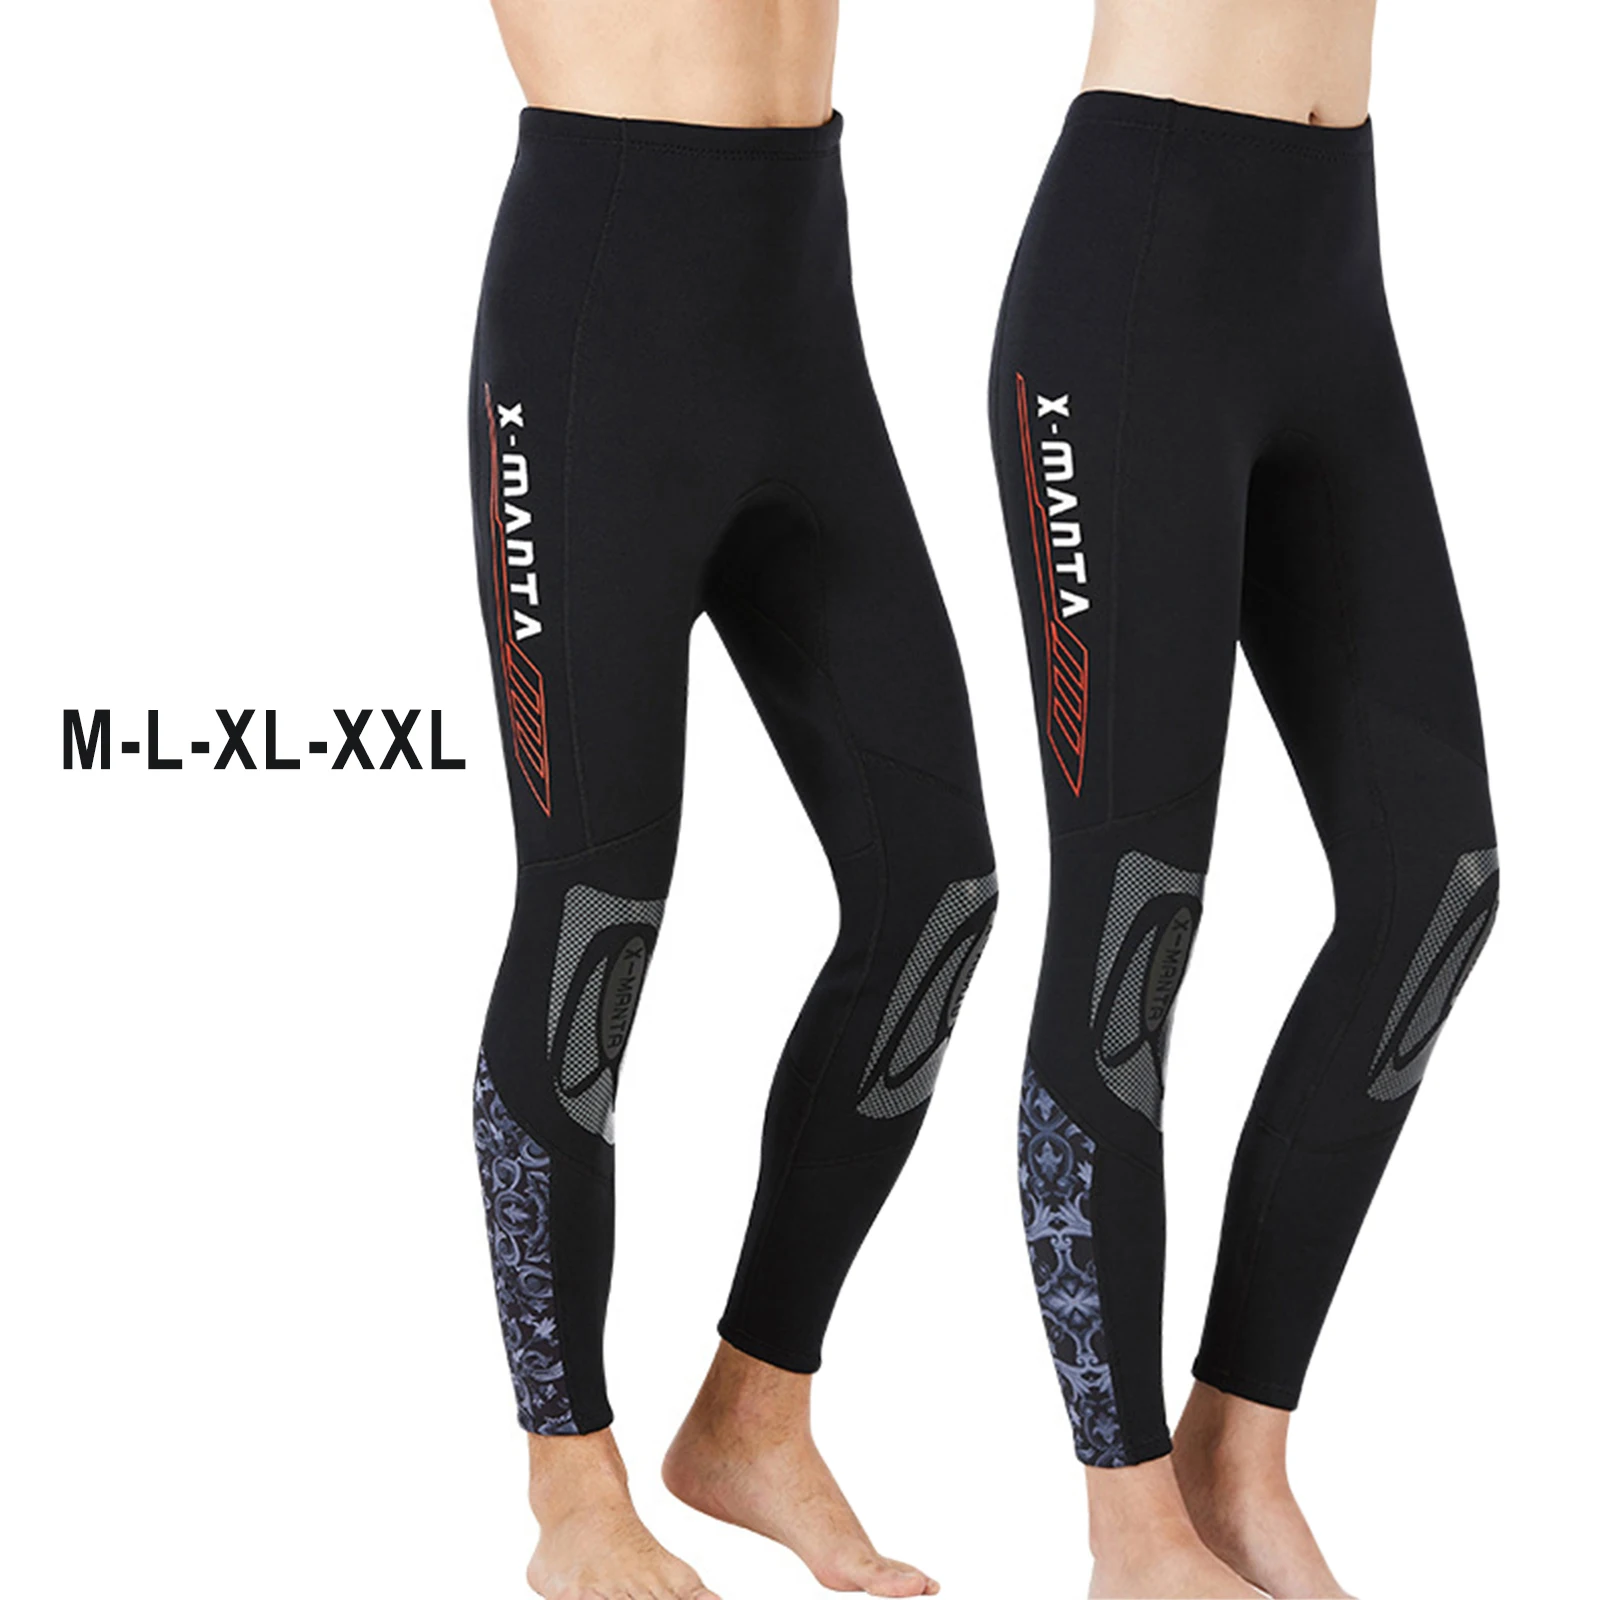 Wetsuit pantolon 1.5mm neopren uzun tayt balıkçılık tüplü dalış Kayaking